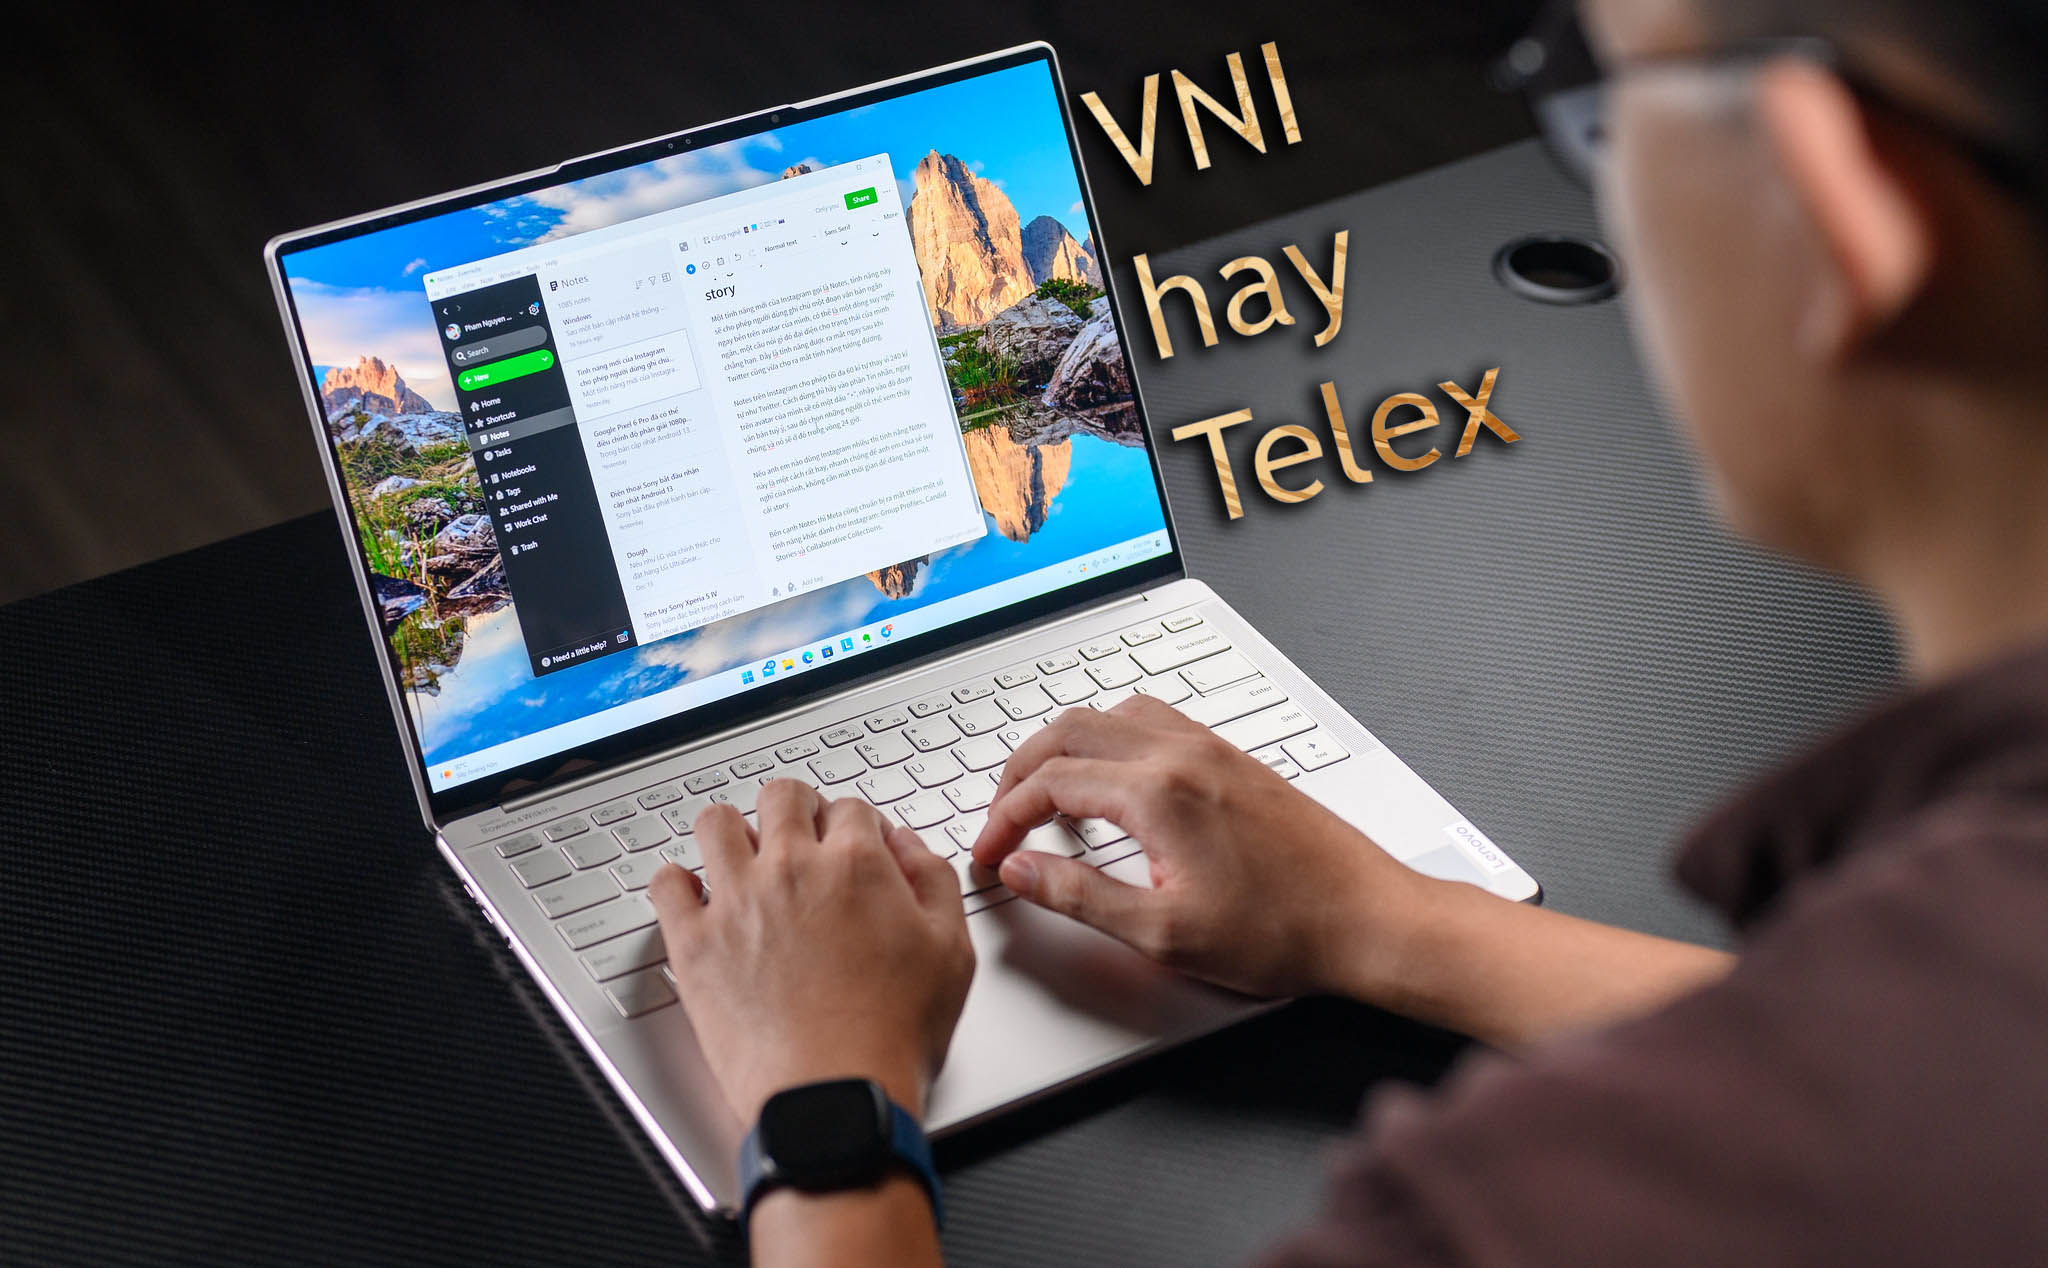 Anh em gõ tiếng Việt trên máy tính Windows theo kiểu VNI hay Telex?